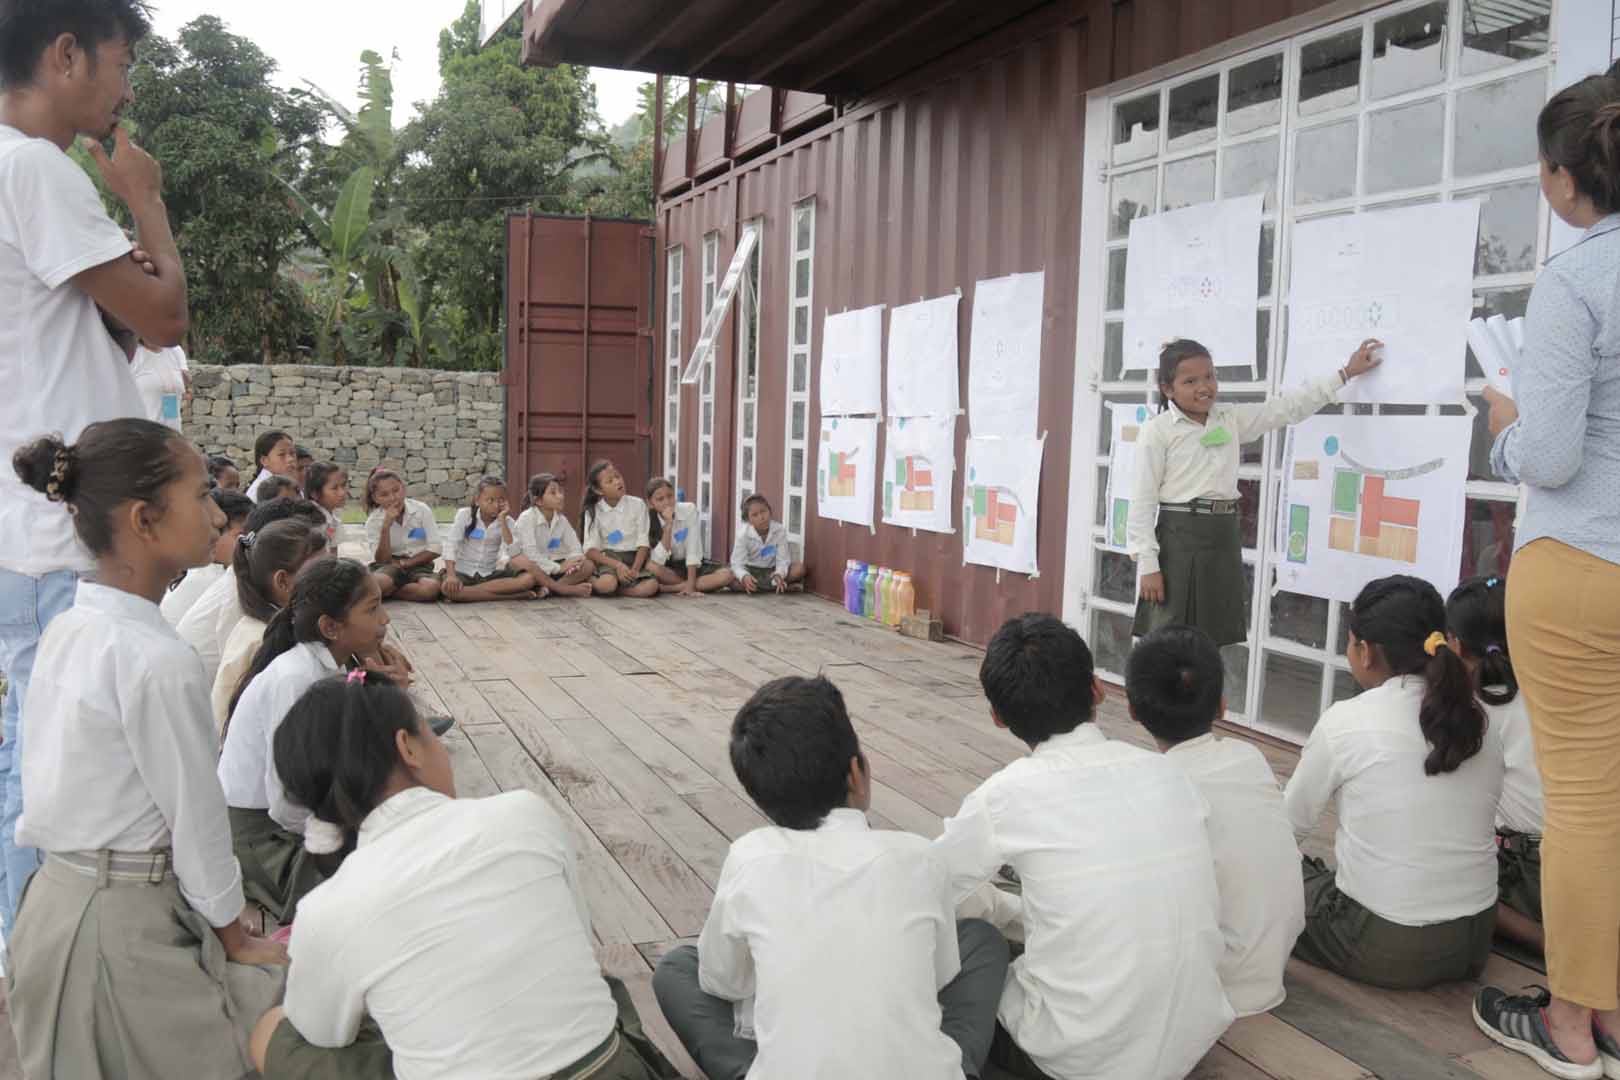 Children gathered watching a presentation